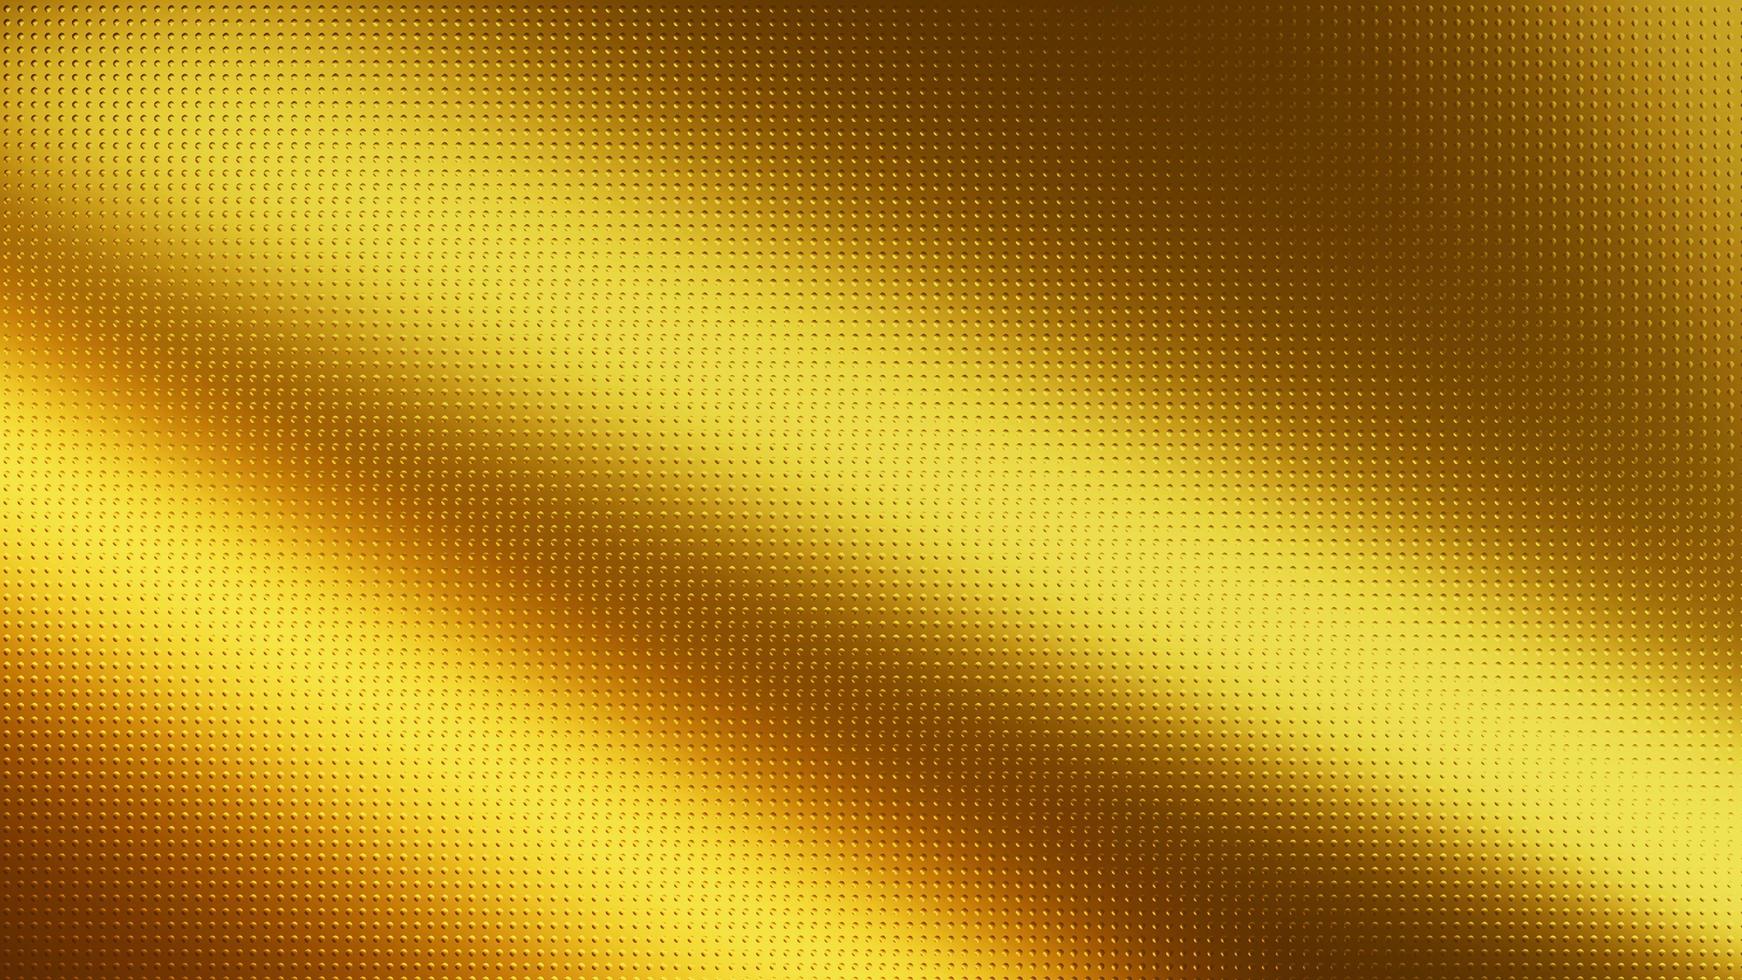 textura de onda brillante luz dorada abstracta con patrón de adorno de oro de semitono radial en oro brillante. foto